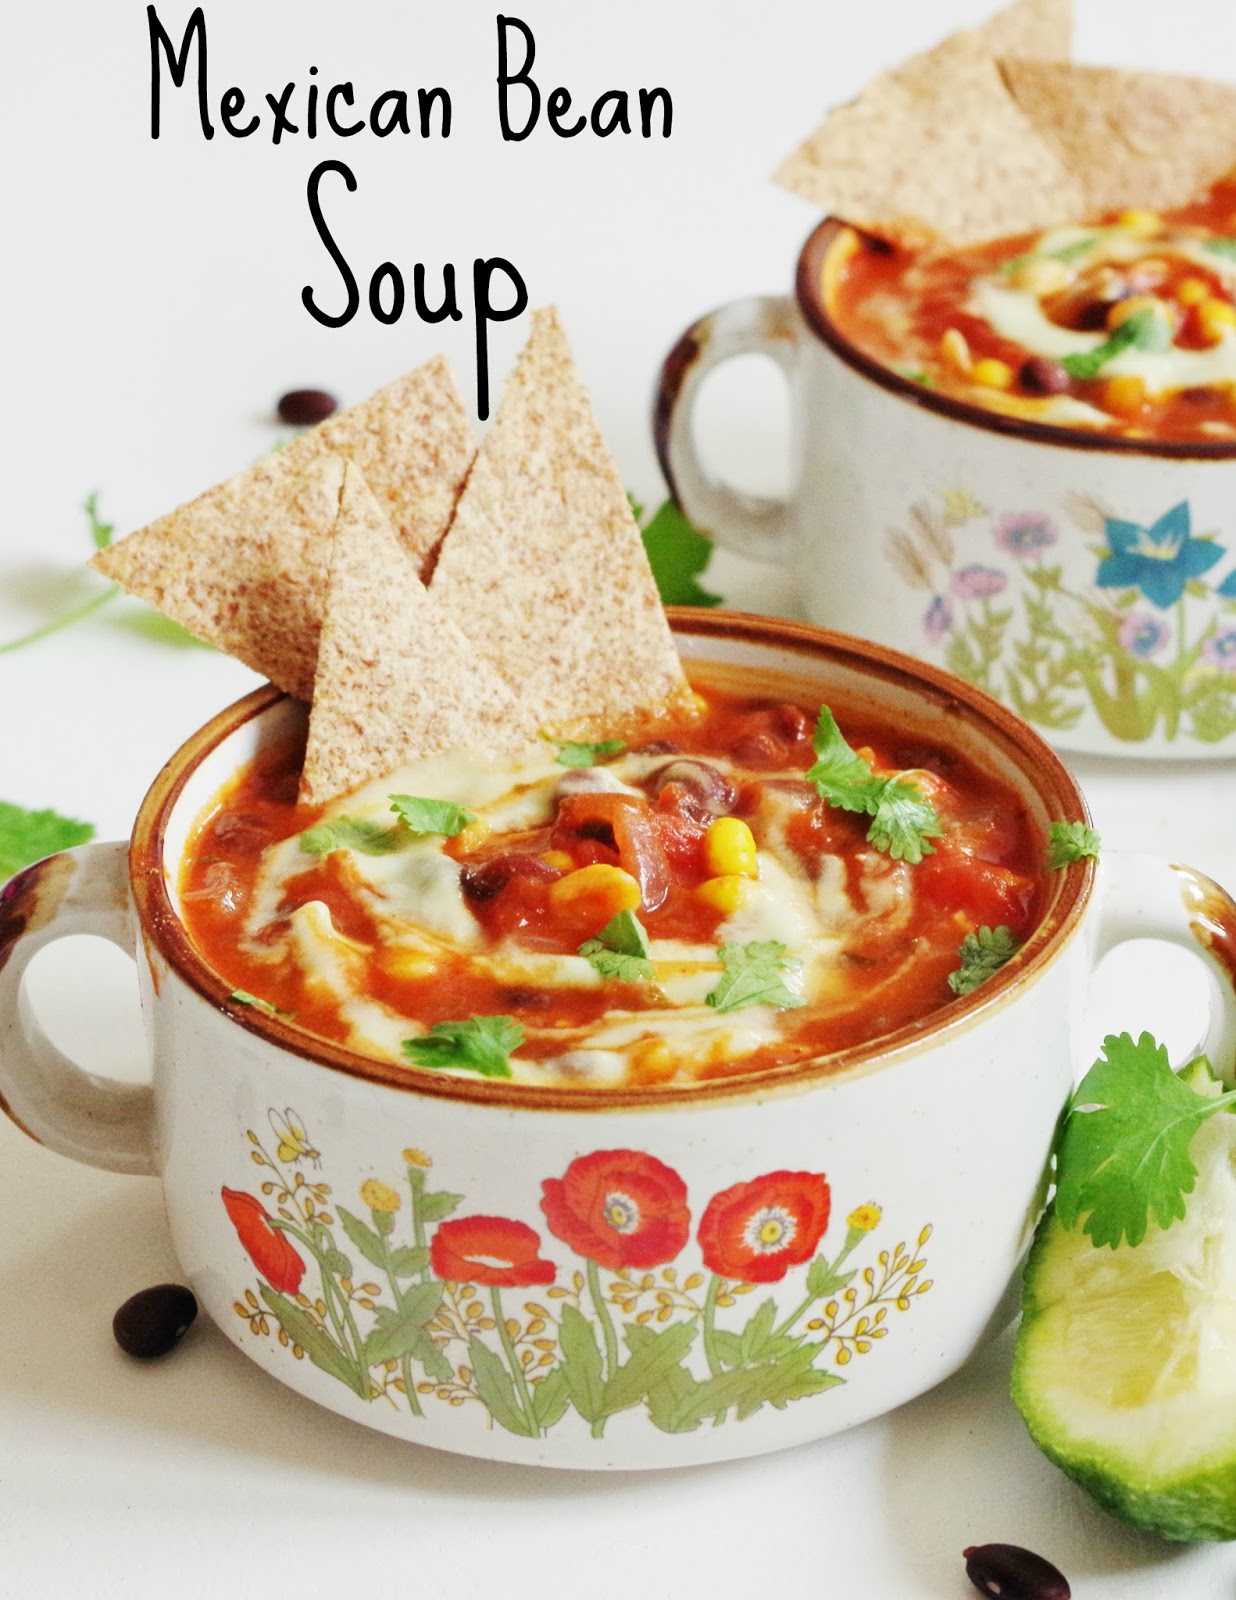 Mexican Bean Soup with Avocado Cream |Euphoric Vegan